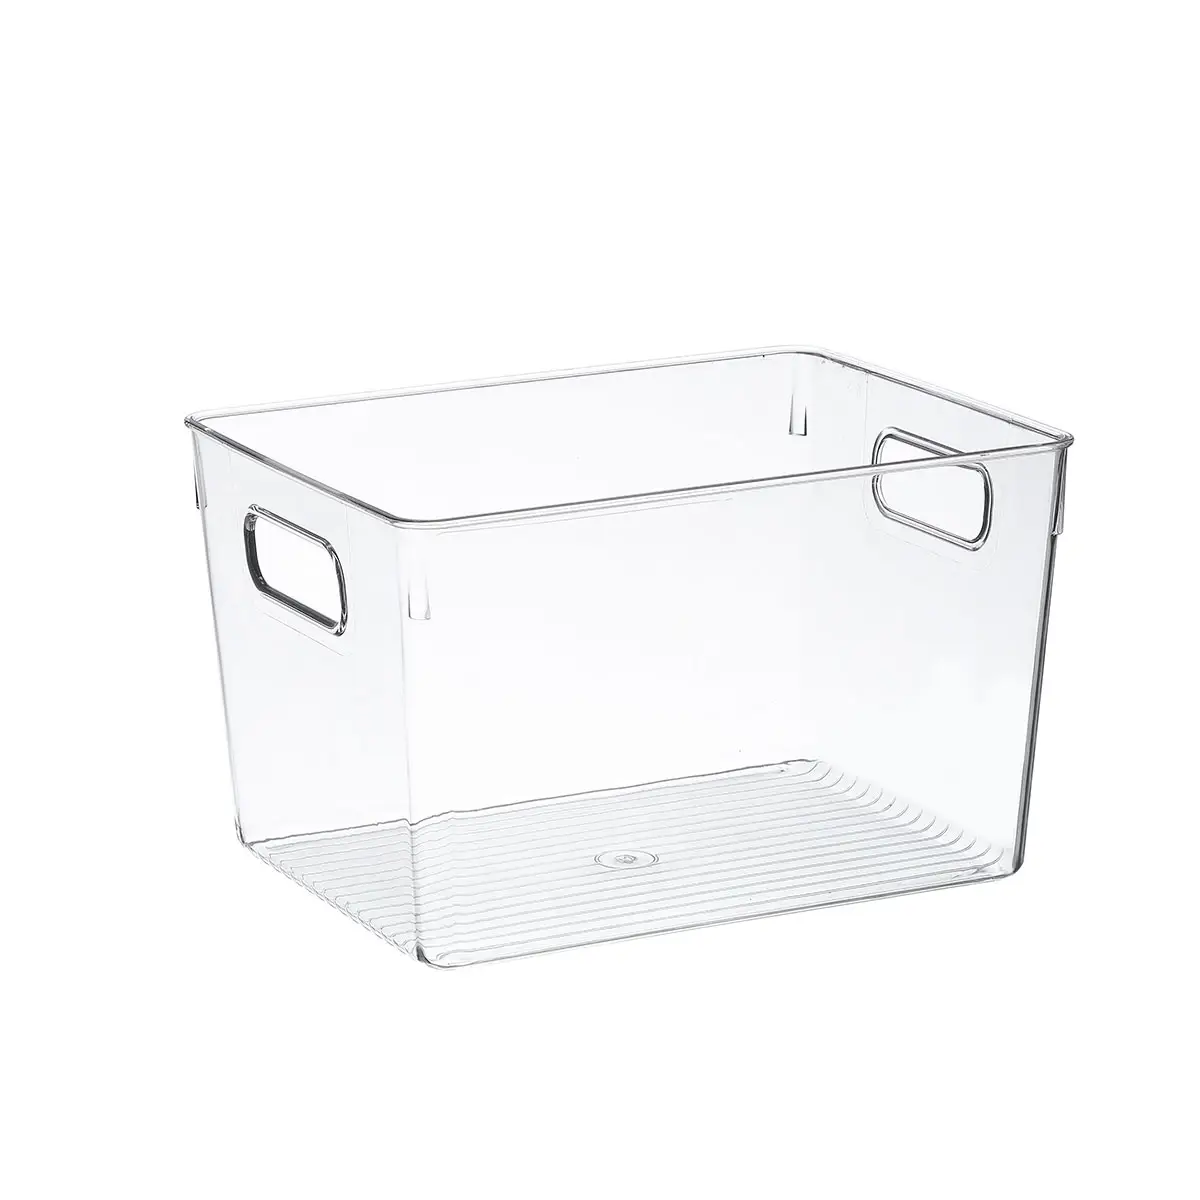 A5 Kühlschrank Pantry Organizer Bins, durchsichtige Kunststoff-Vorrats behälter für die Küche